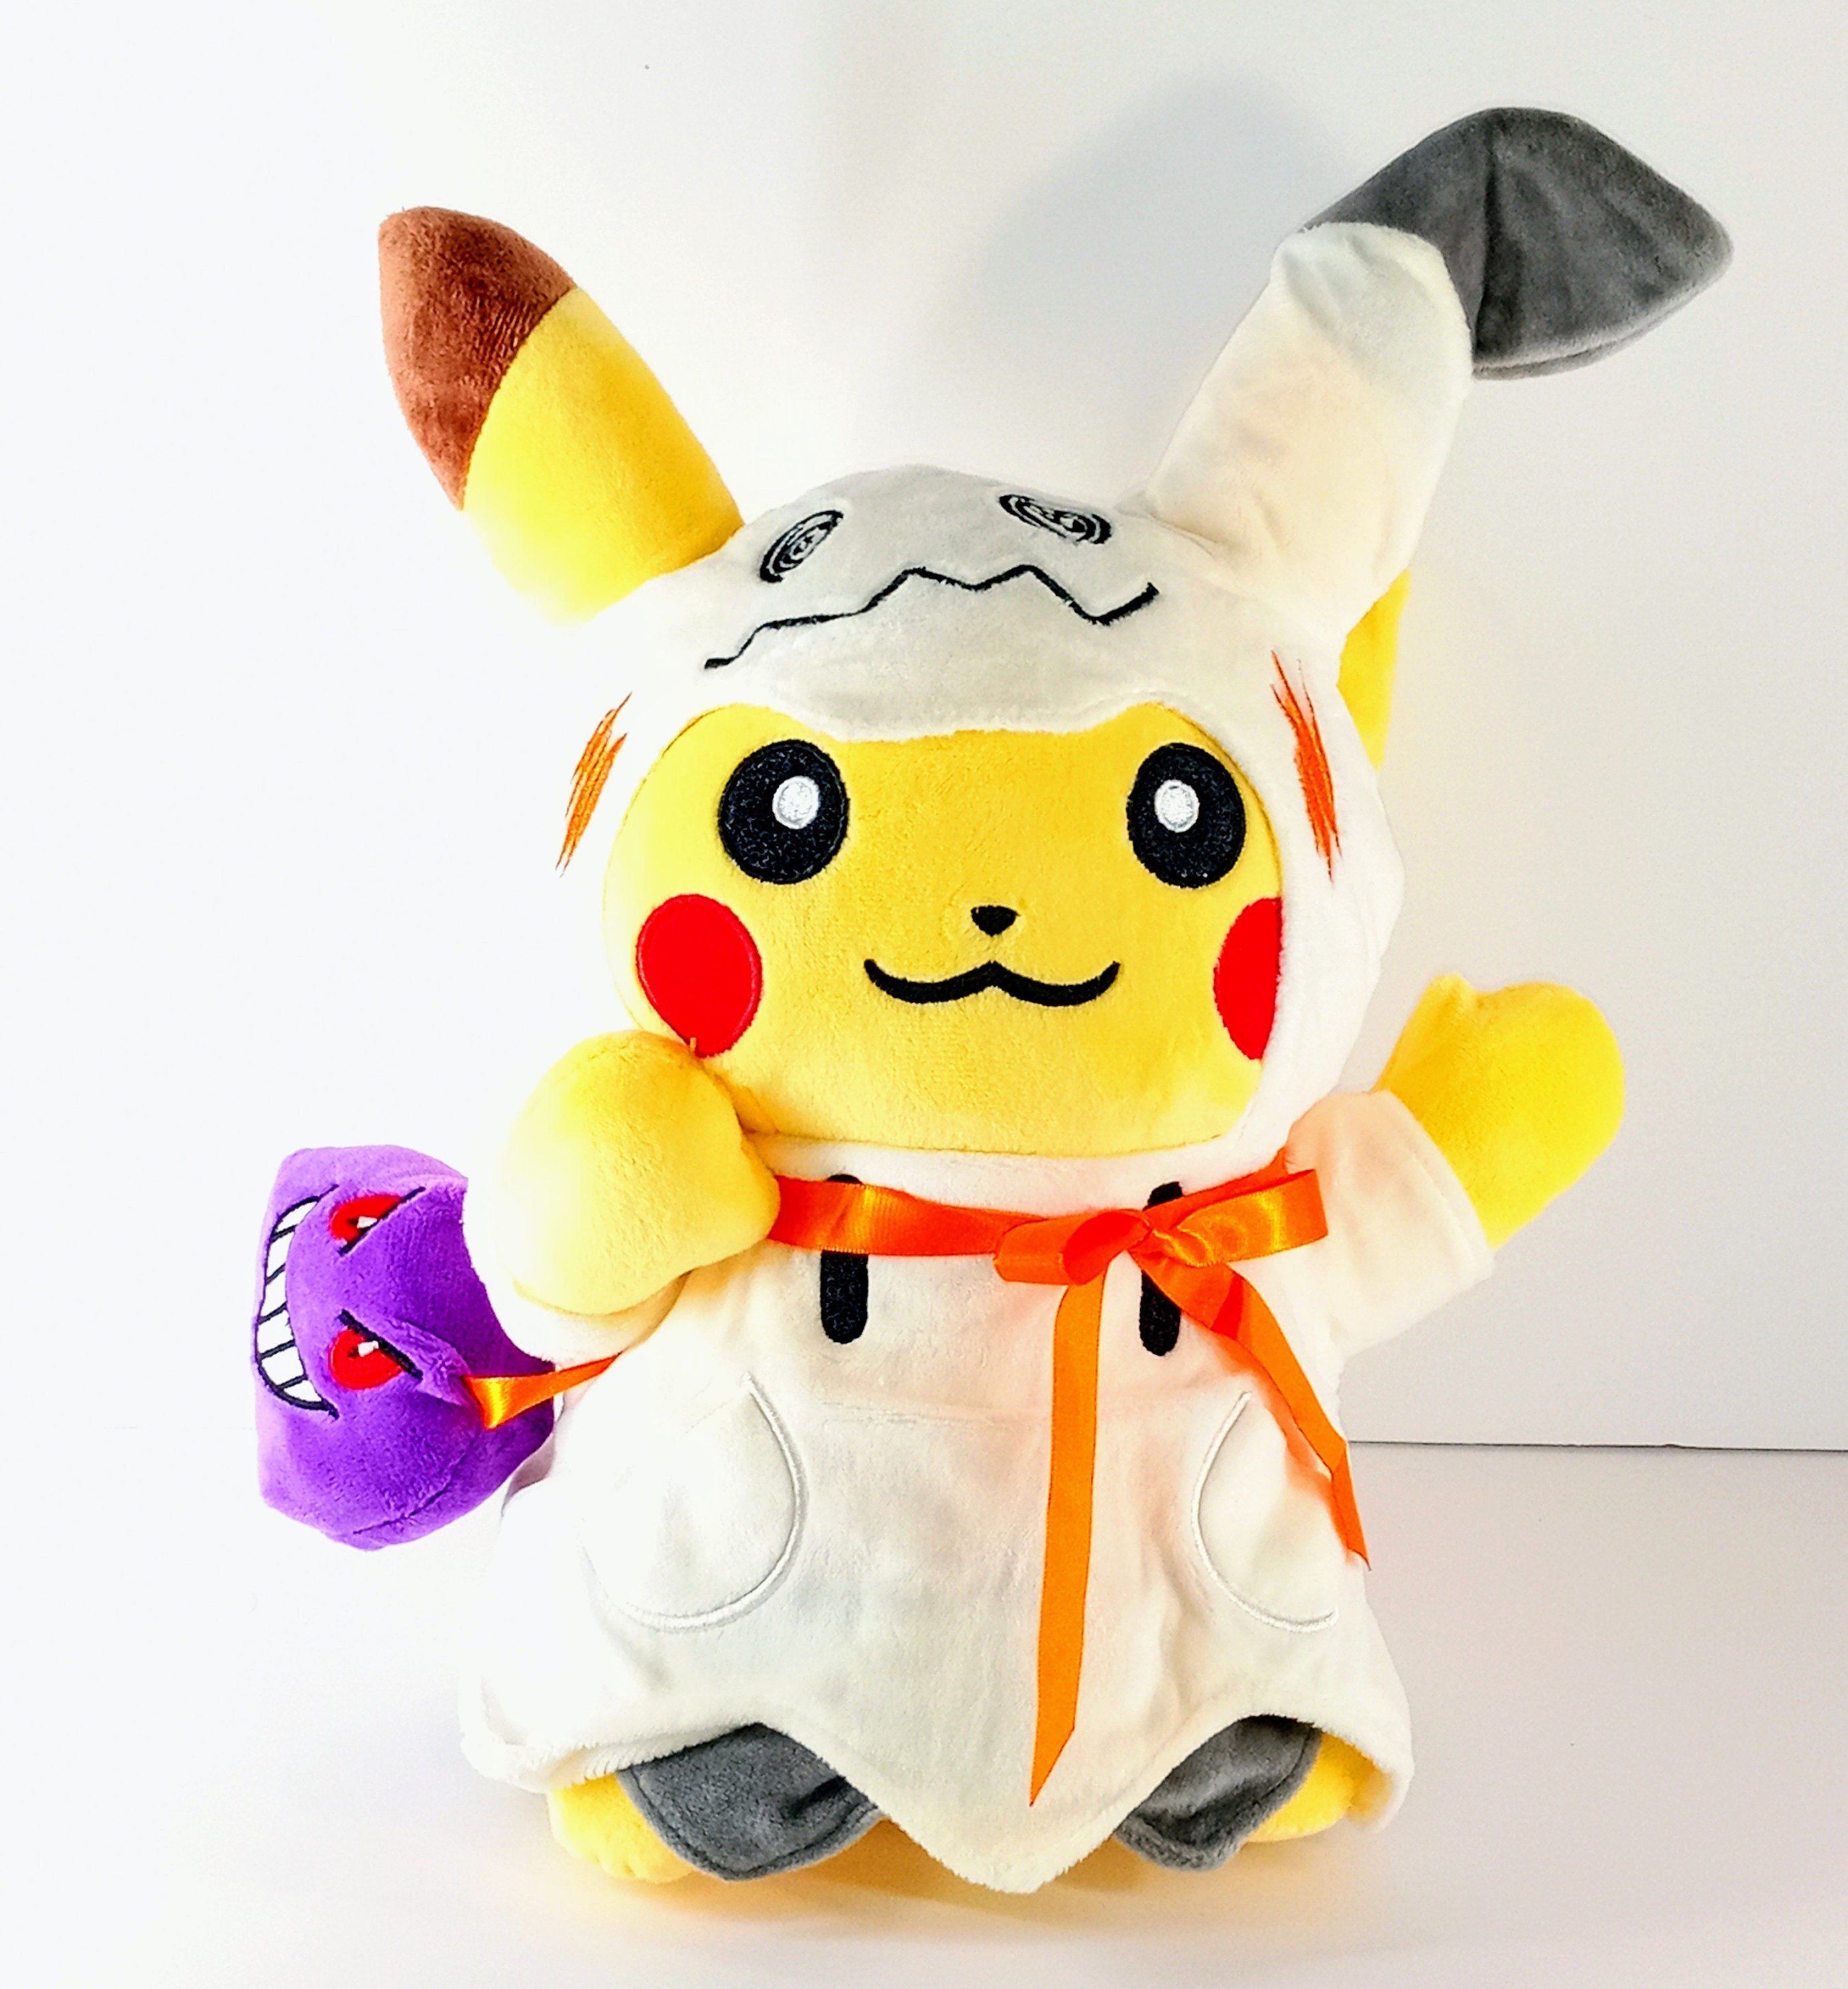  Pokemon Center 10-Inch Shiny Mimikyu Stuffed Plush